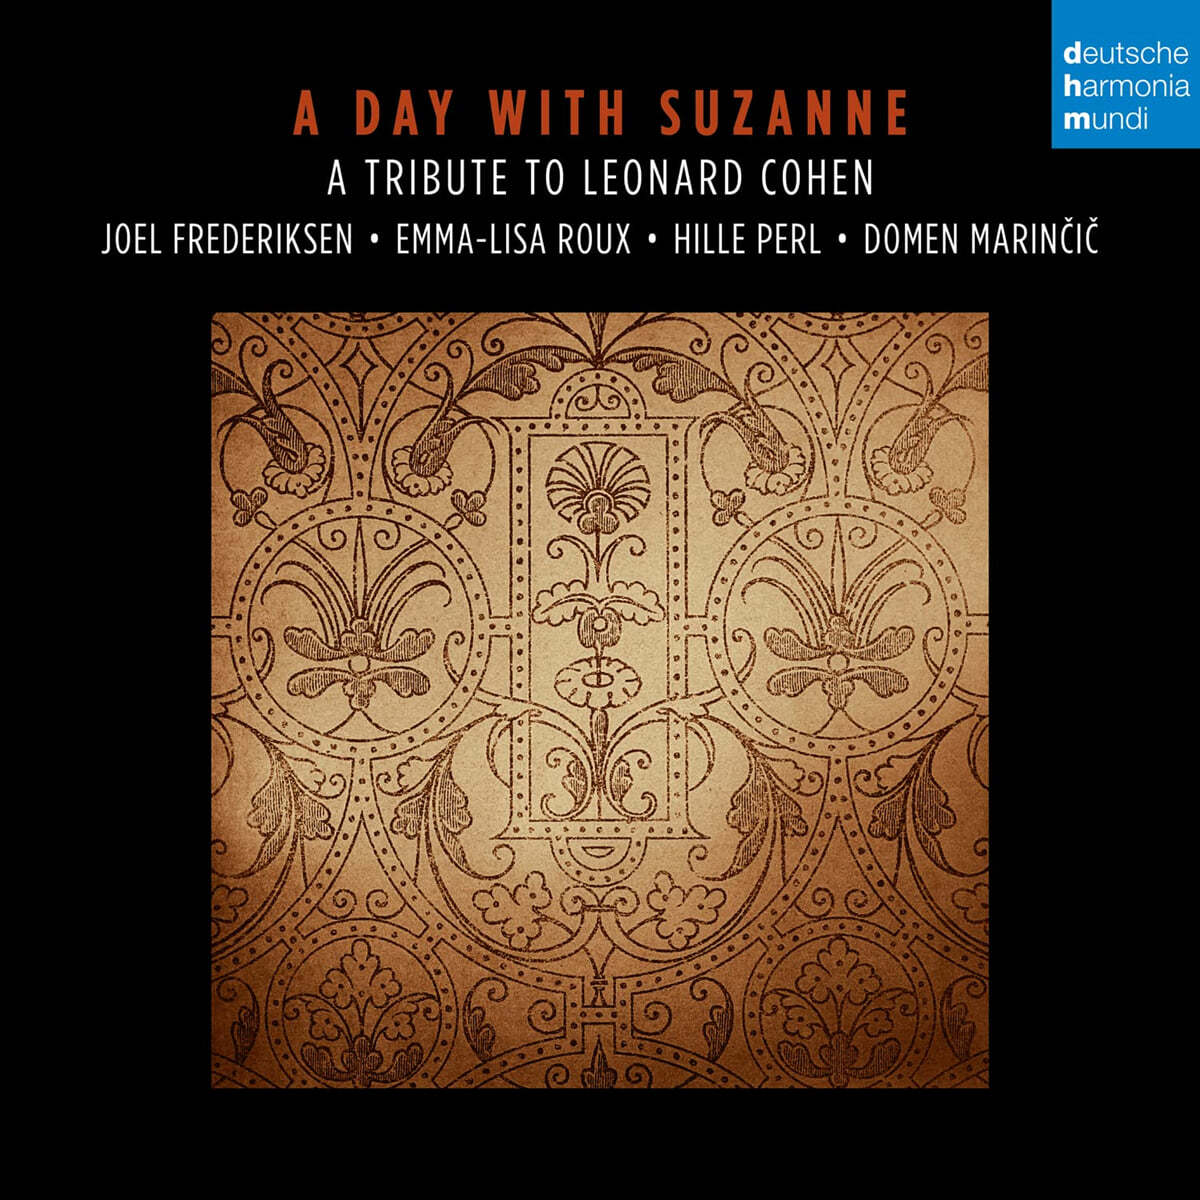 보컬과 류트, 비올로 연주하는 레너드 코헨 트리뷰트 앨범 (A Day with Suzanne - A Tribute to Leonard Cohen)